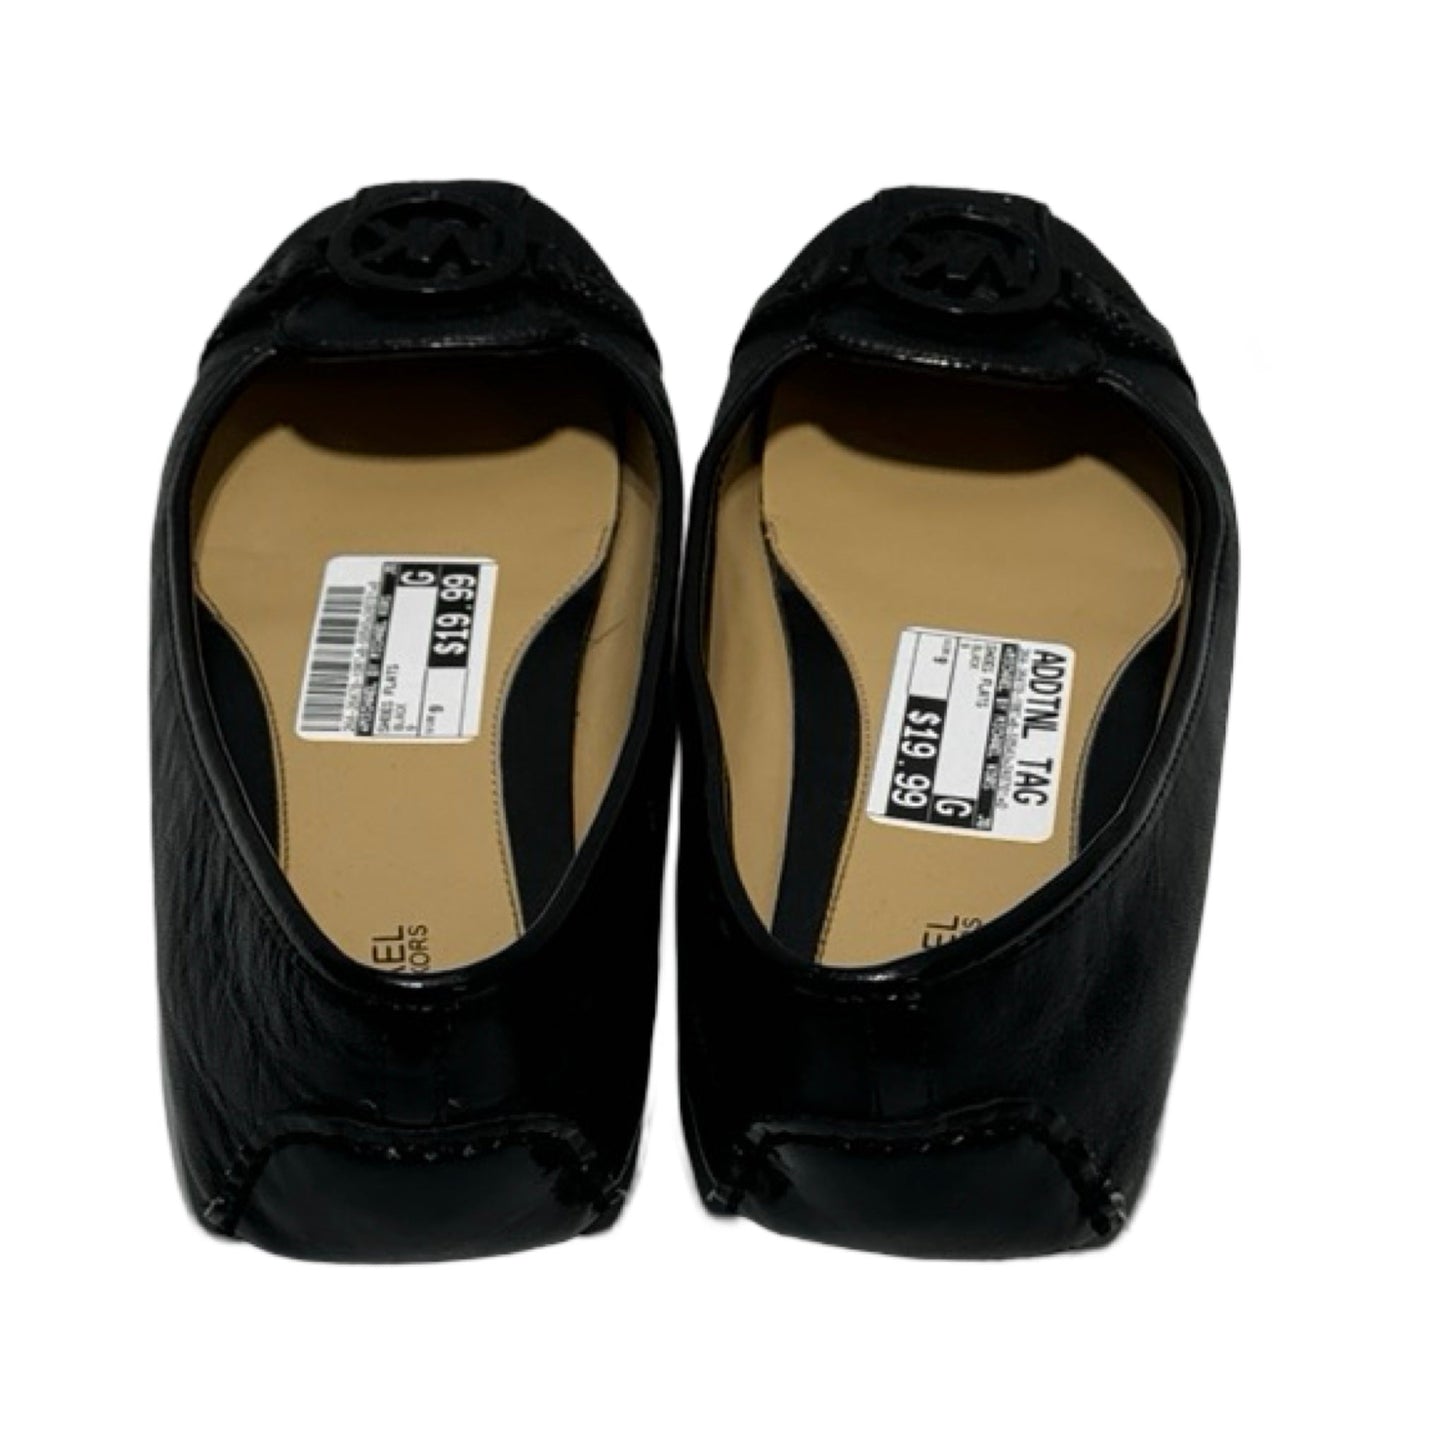 Black Shoes Flats Designer Michael By Michael Kors, Size 9